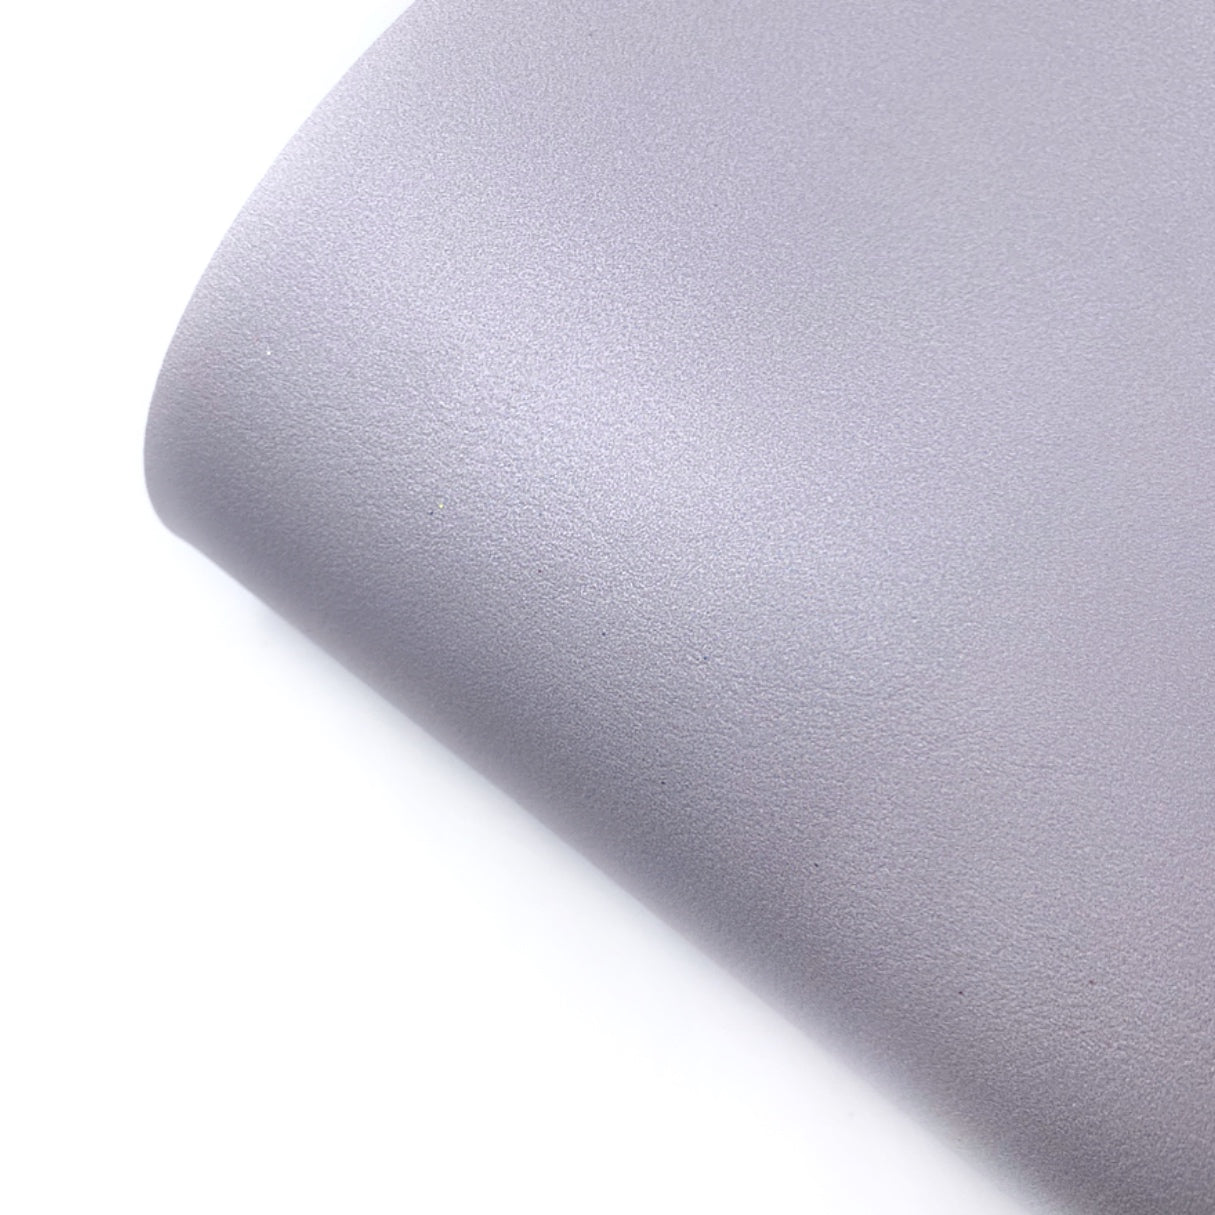 Silver Dust Core Colour Premium Faux Leather Fabric Sheets